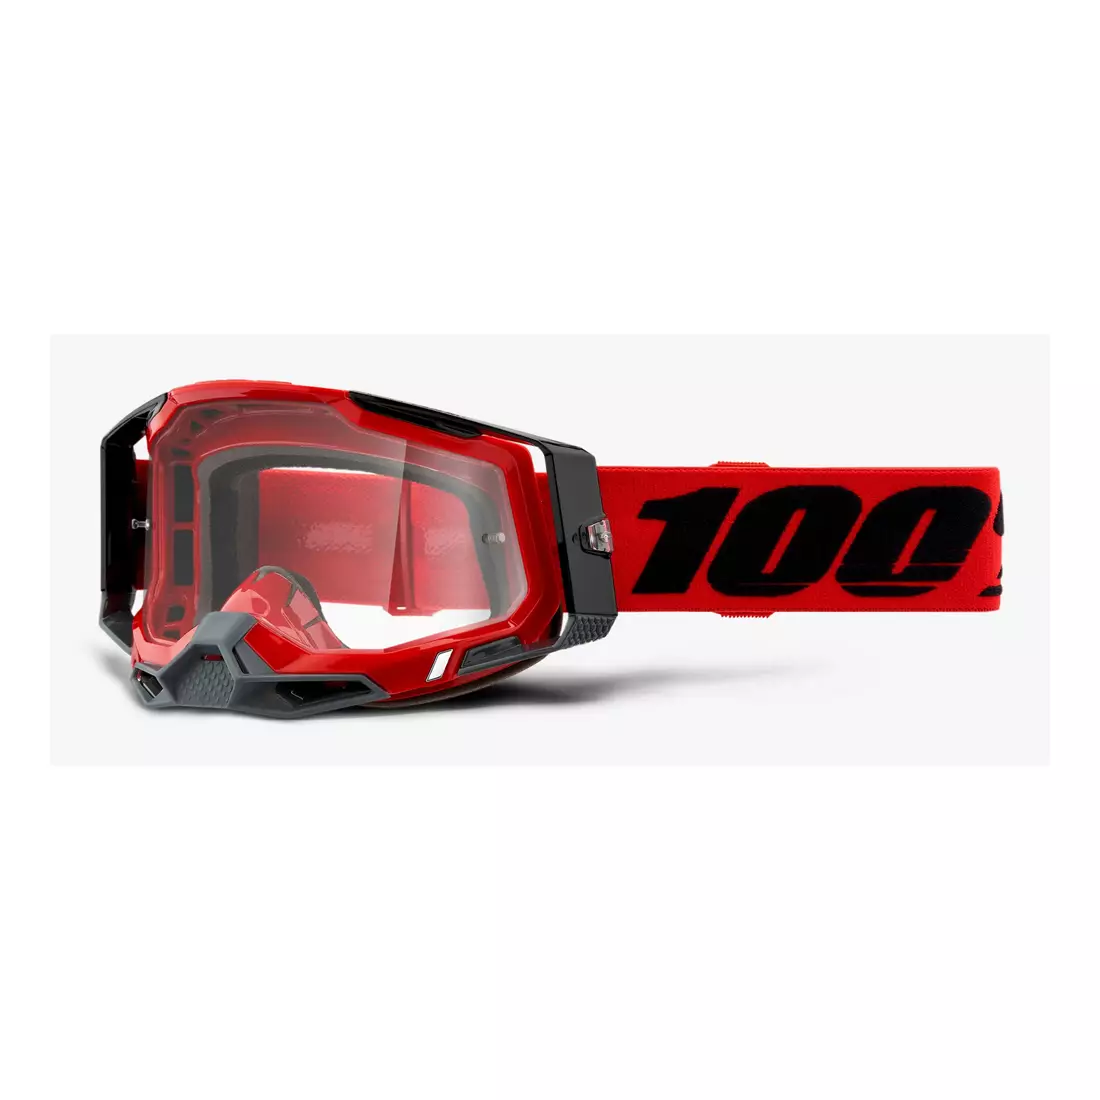 100% cyklistické brýle RACECRAFT 2 (červené zrcadlové sklo Anti-Fog, LT 38%+/-5% + průhledné sklo Anti-Fog, LT 88%-92% + 10 zrywek) attack red STO-50121-251-03